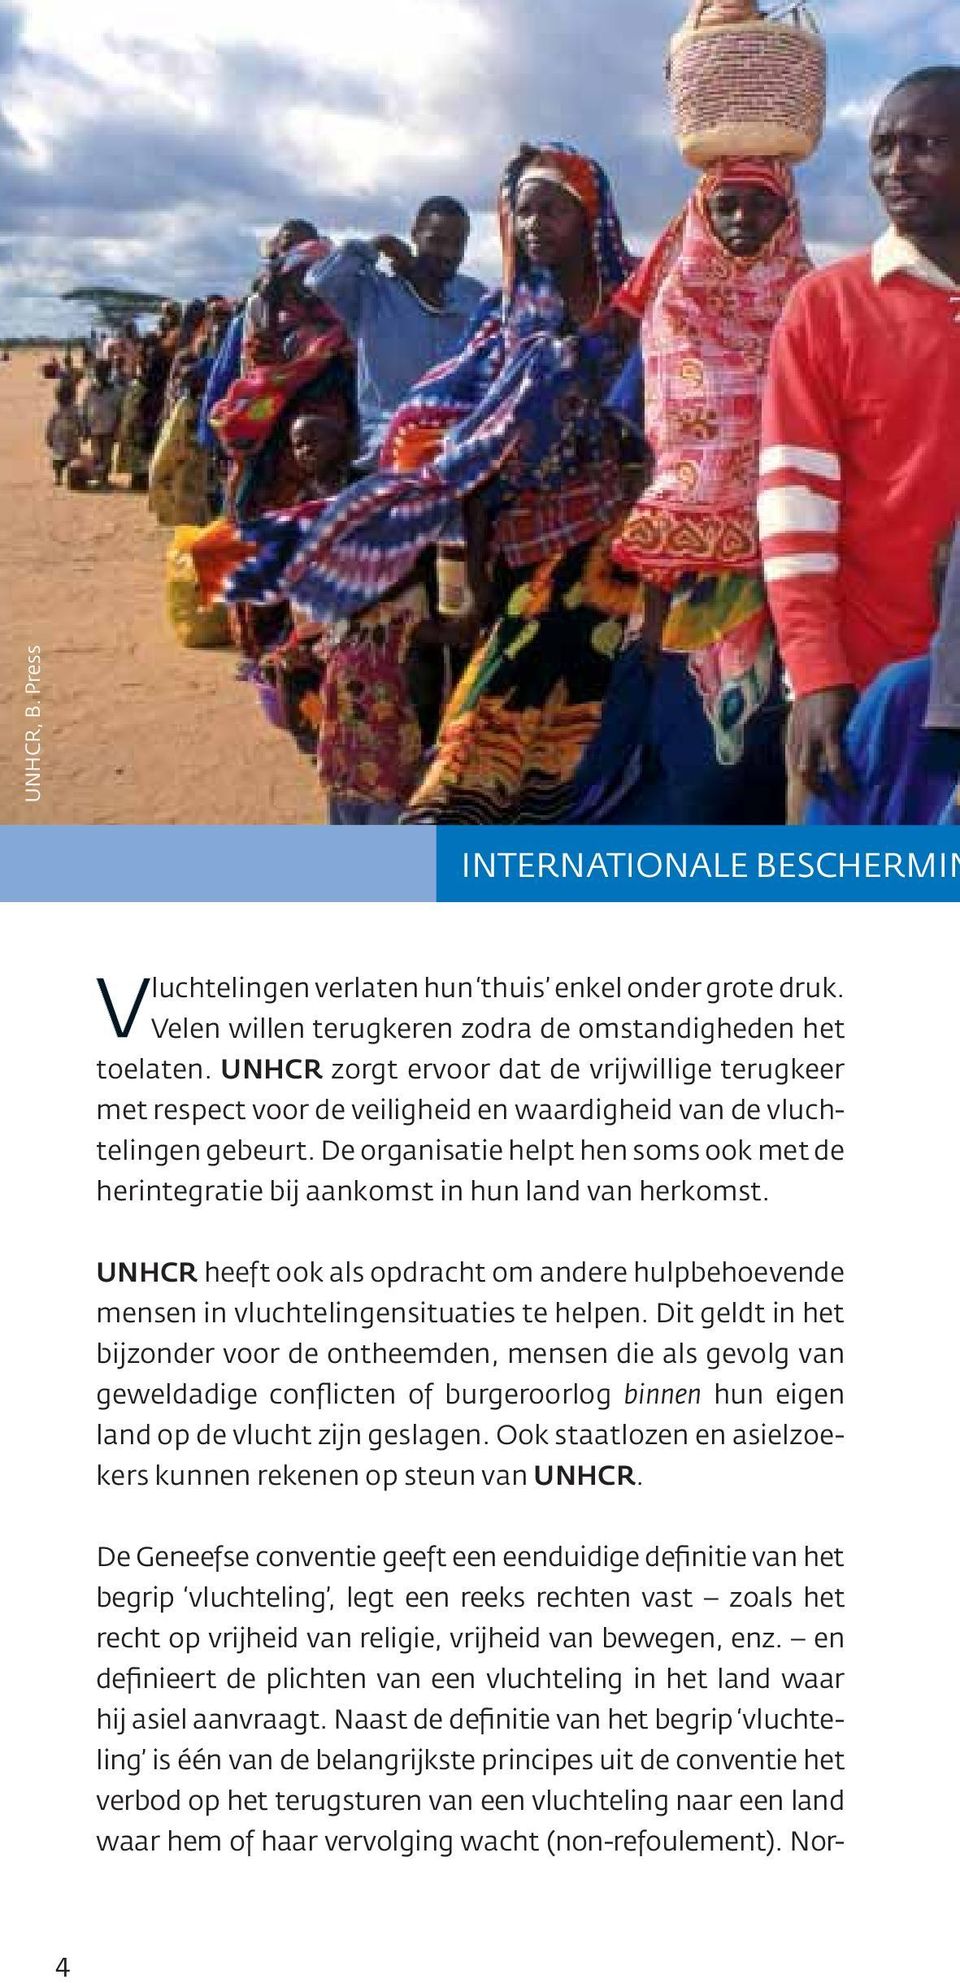 De organisatie helpt hen soms ook met de herintegratie bij aankomst in hun land van herkomst. UNHCR heeft ook als opdracht om andere hulpbehoevende mensen in vluchtelingensituaties te helpen.